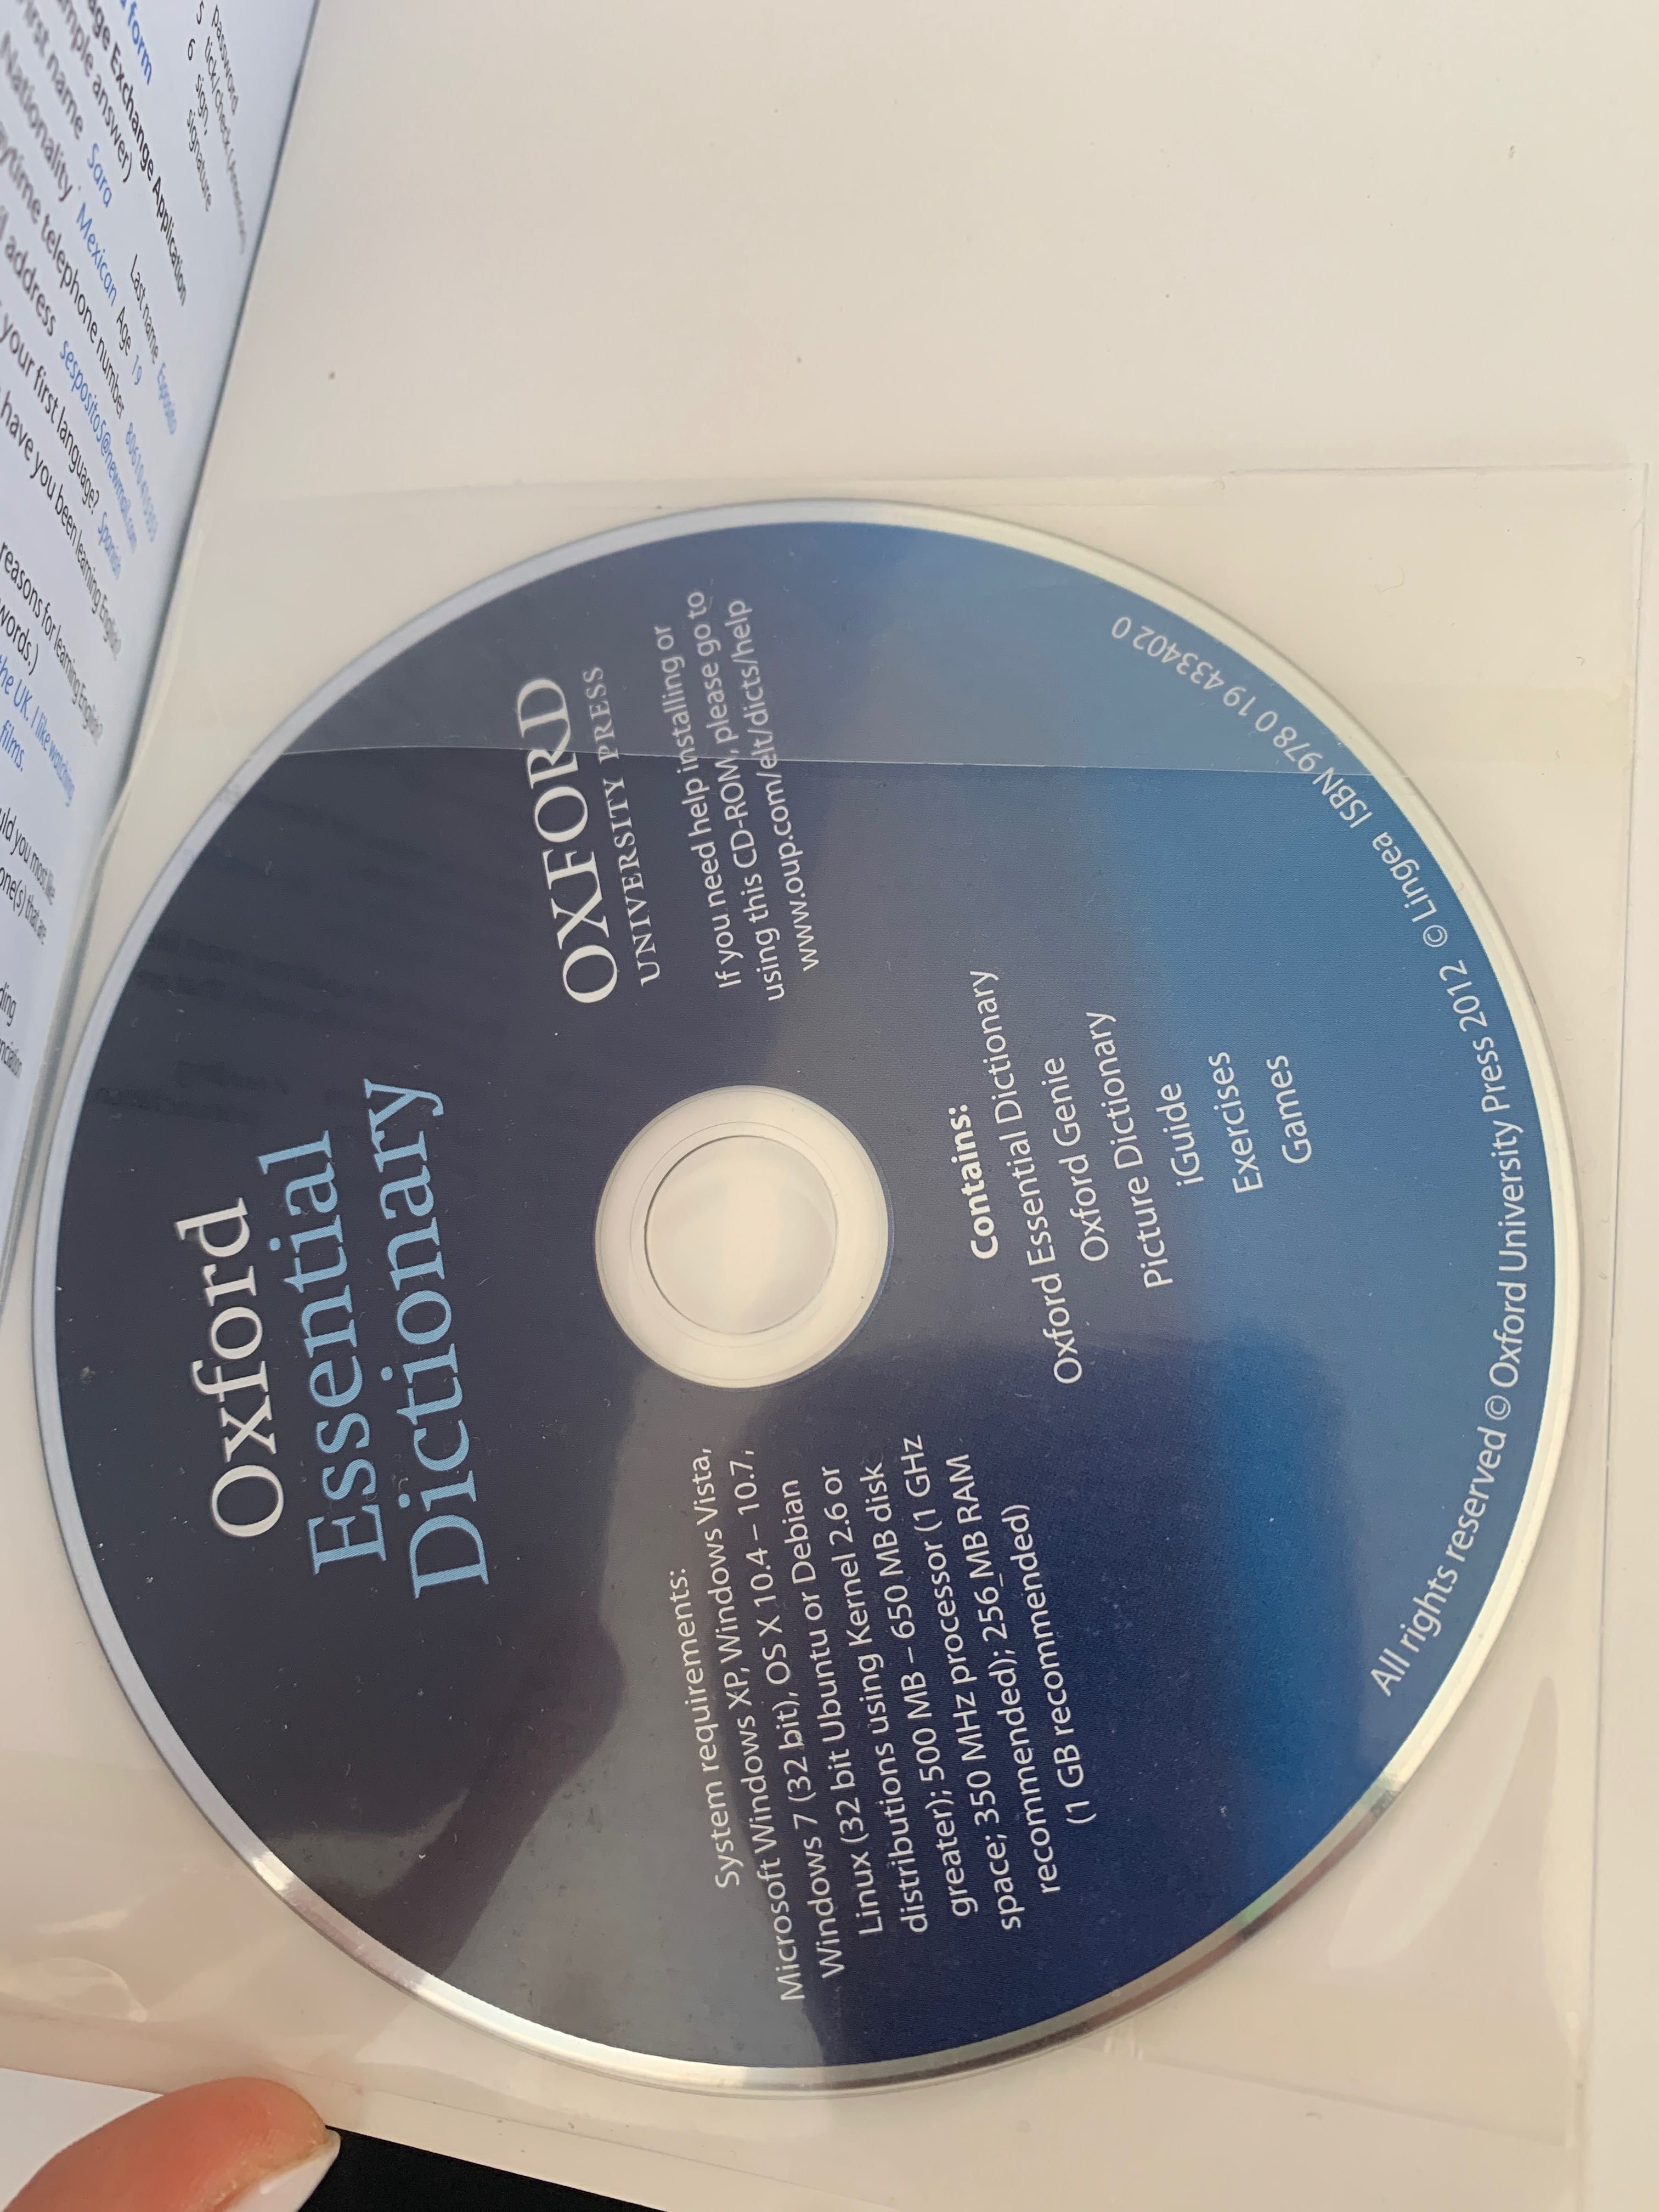 OXFORD Essential Dictionary, книга новая+диск